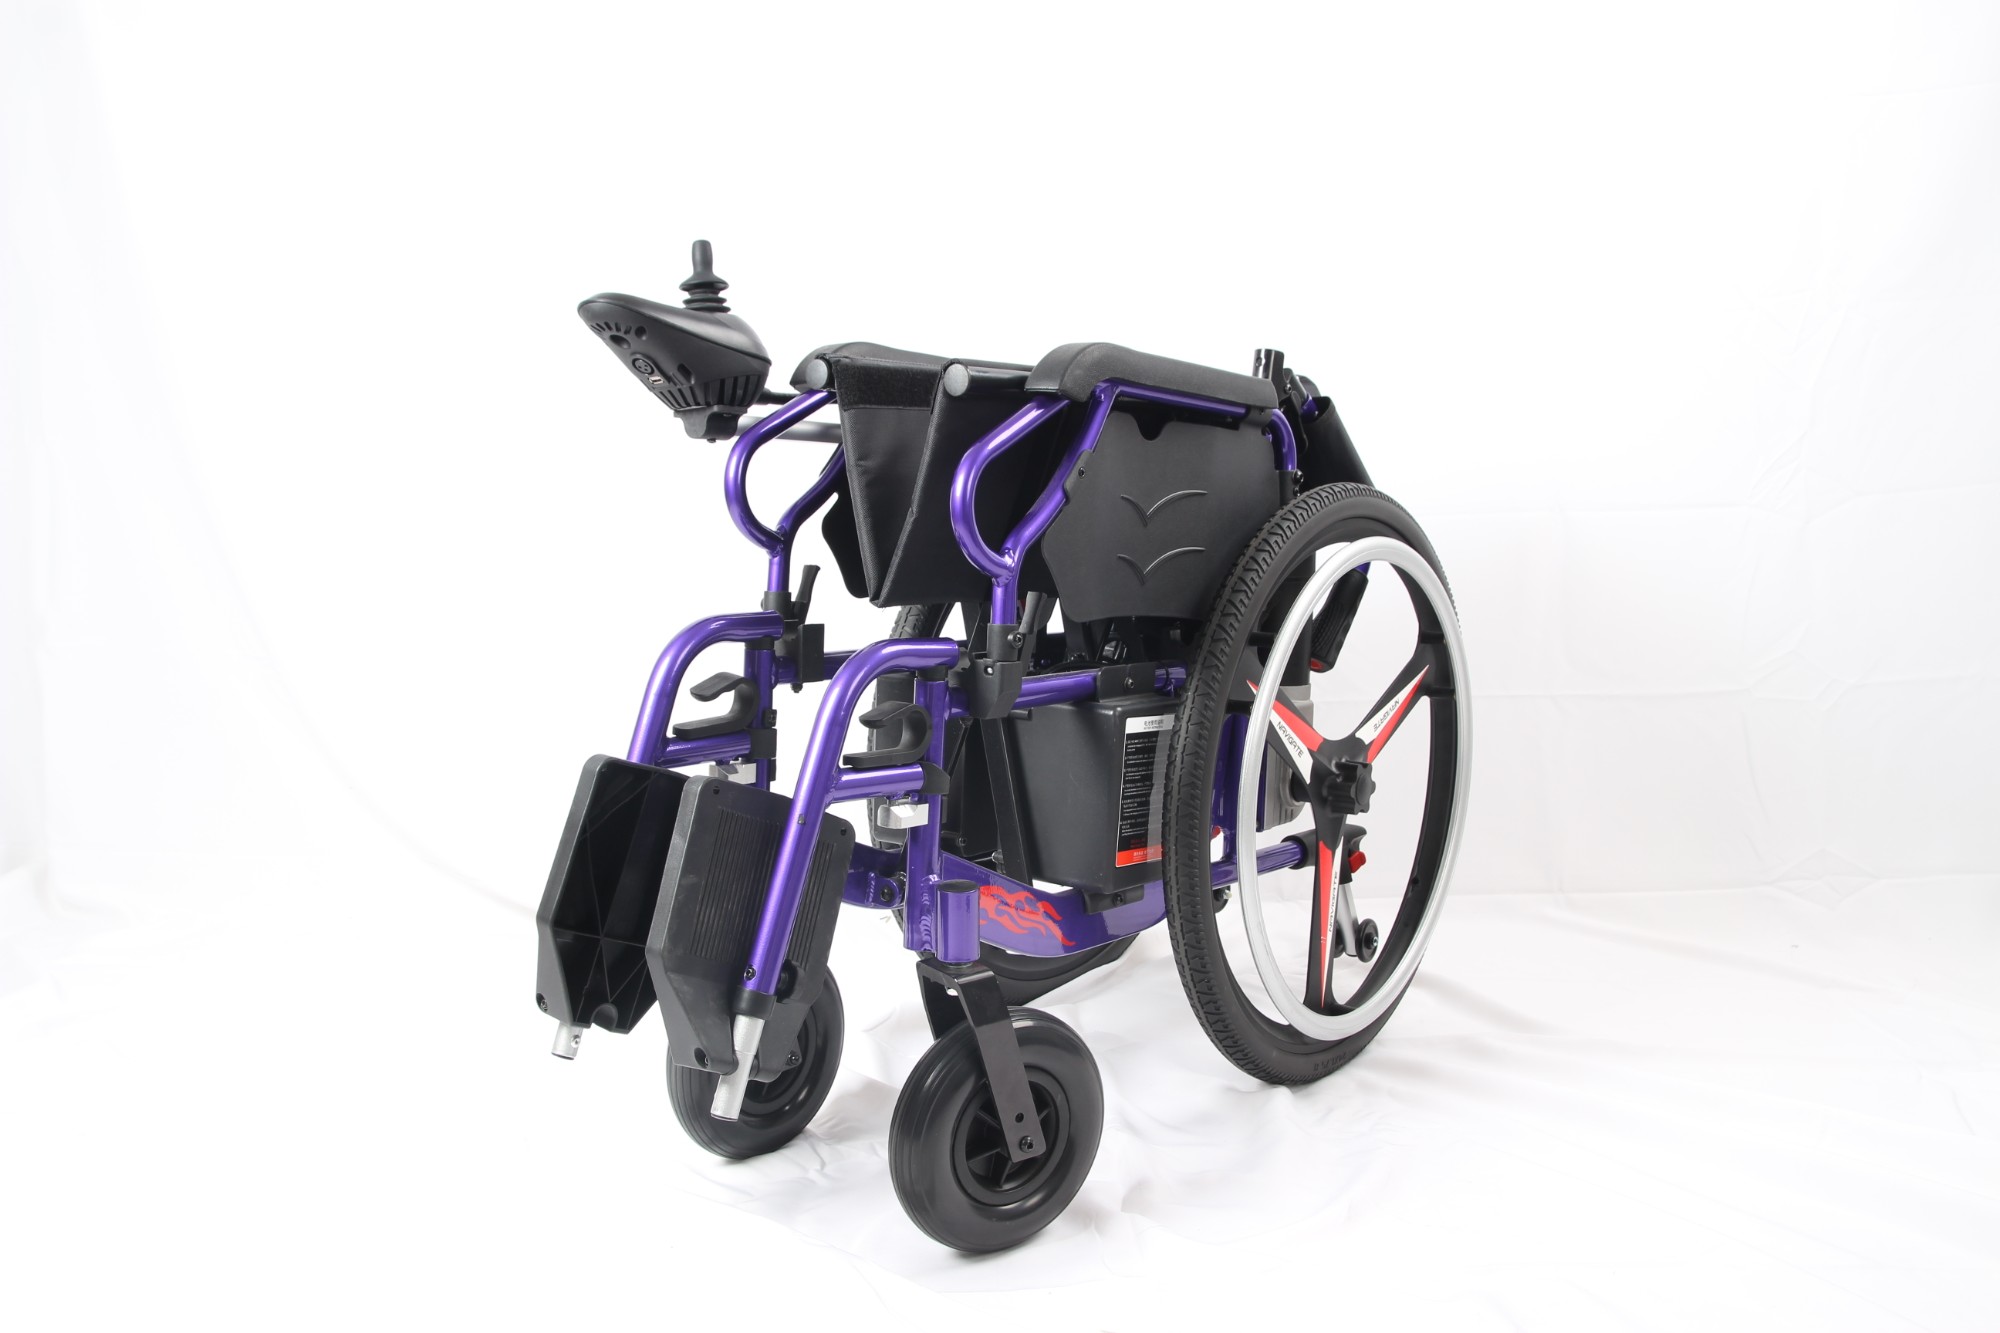 Katlanabilir Yeni Varış Çift Amaçlı Elle Elektrikli Tekerlekli Sandalye satın al,Katlanabilir Yeni Varış Çift Amaçlı Elle Elektrikli Tekerlekli Sandalye Fiyatlar,Katlanabilir Yeni Varış Çift Amaçlı Elle Elektrikli Tekerlekli Sandalye Markalar,Katlanabilir Yeni Varış Çift Amaçlı Elle Elektrikli Tekerlekli Sandalye Üretici,Katlanabilir Yeni Varış Çift Amaçlı Elle Elektrikli Tekerlekli Sandalye Alıntılar,Katlanabilir Yeni Varış Çift Amaçlı Elle Elektrikli Tekerlekli Sandalye Şirket,